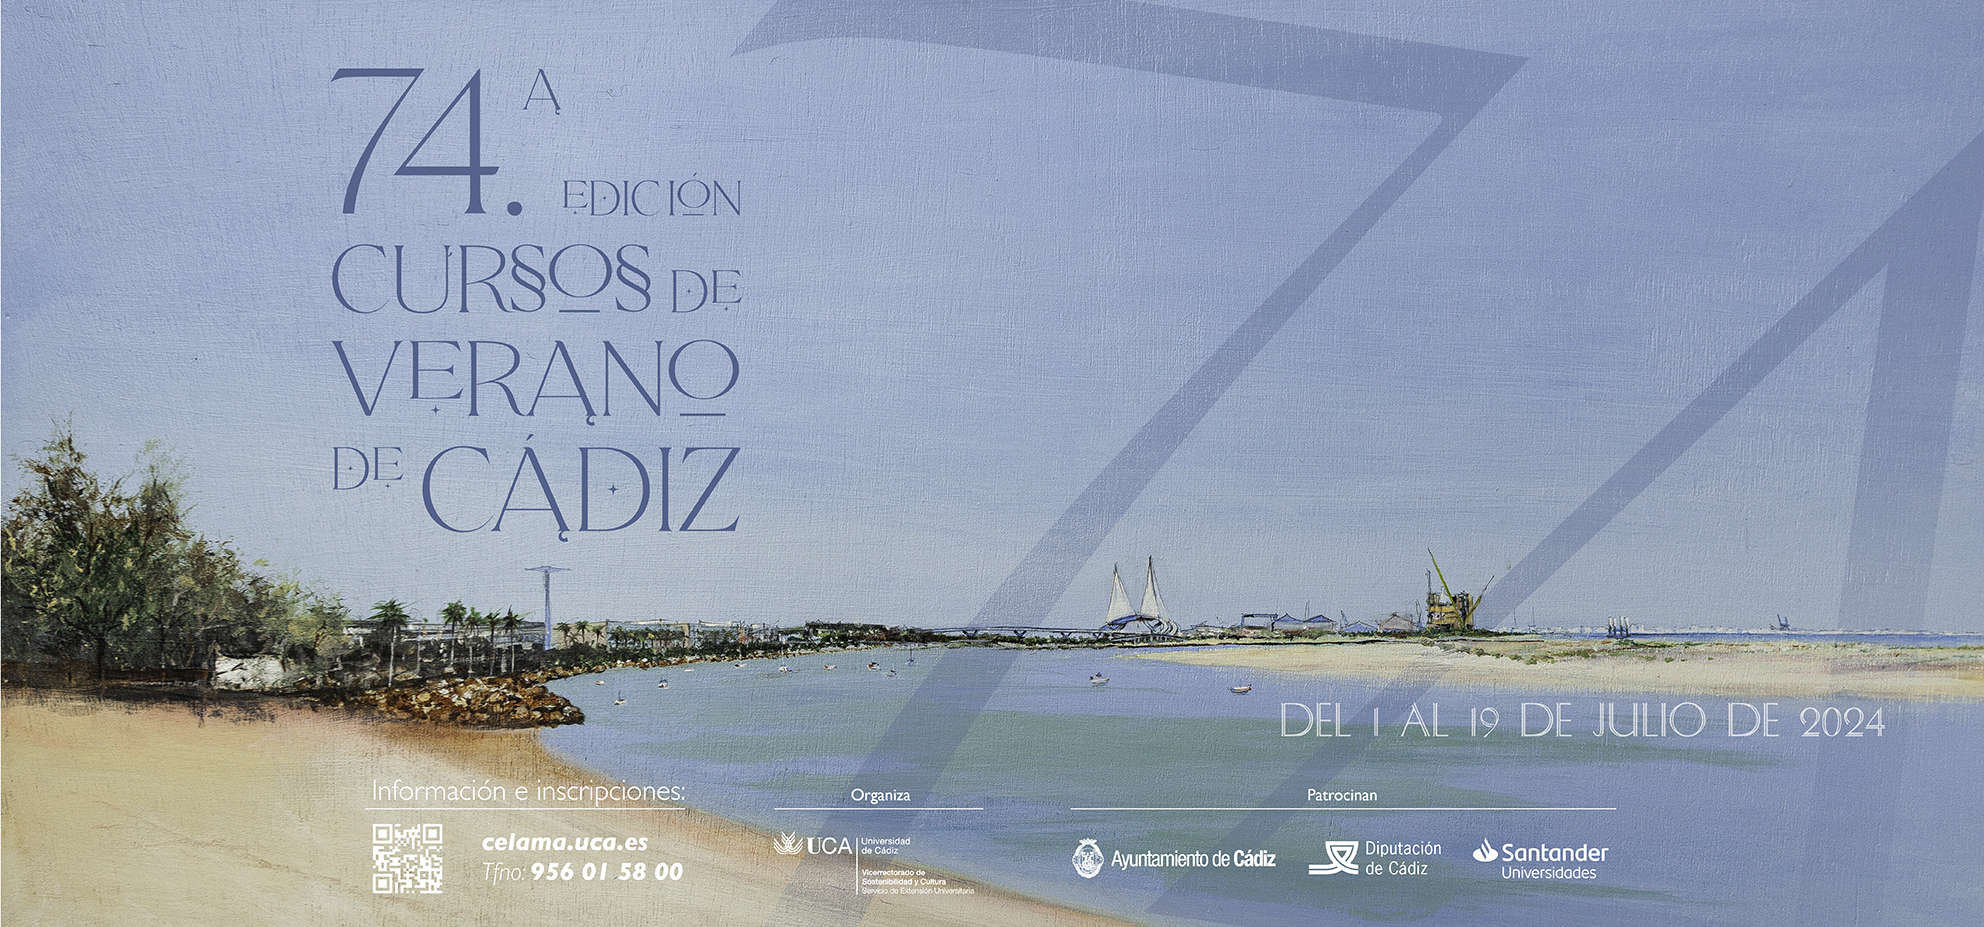 Da comienzo “Se ha escrito un crimen: Periodismo y derecho en la sociedad de la información” en la 74ª edición de los Cursos de Verano de Cádiz